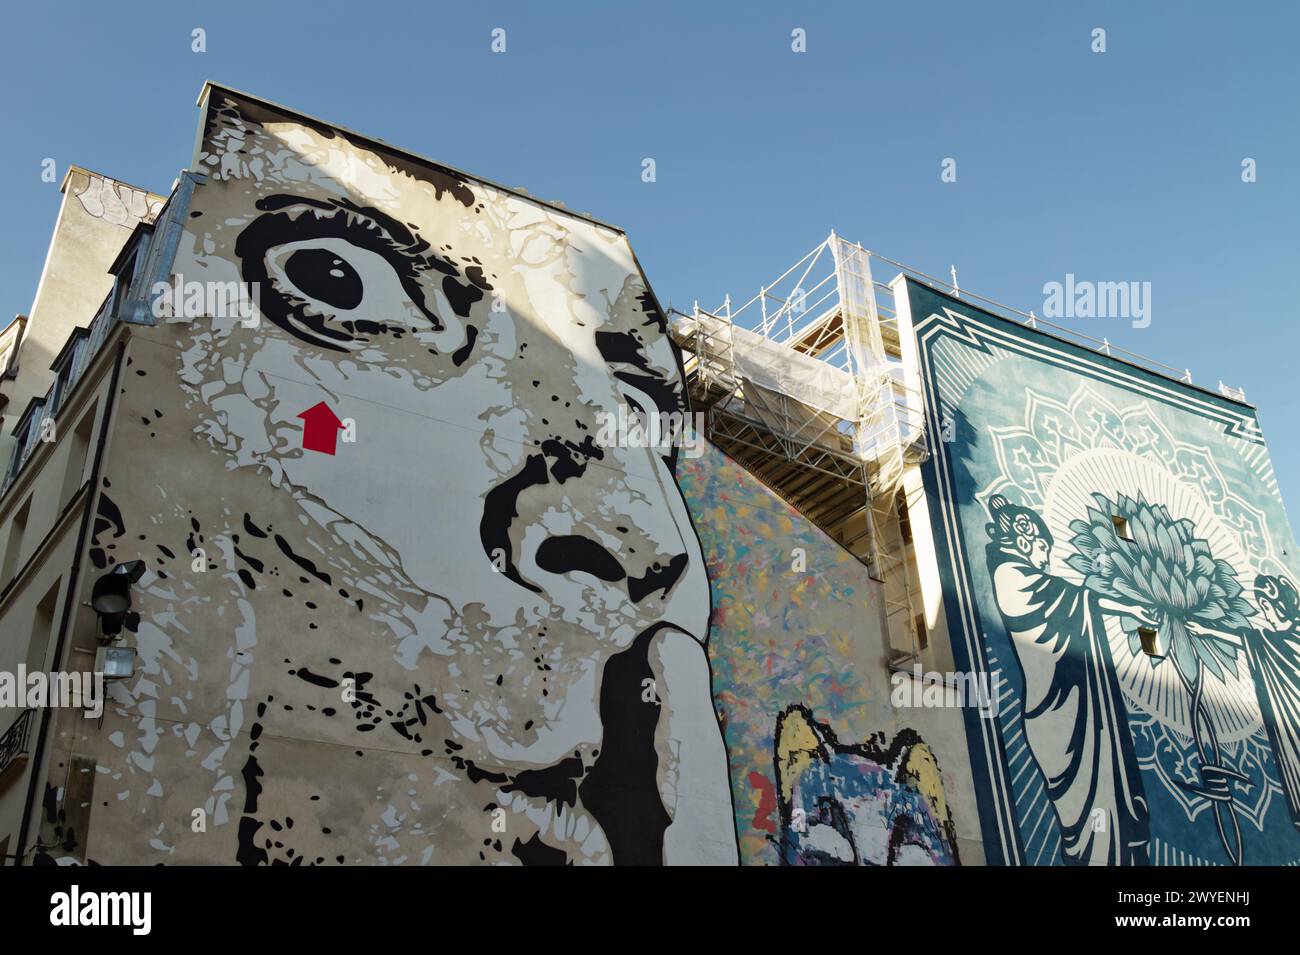 Große Street Art Wandbilder, Chuutt von Jef Aerosol und Knowledge + Action = Power von Shepard Fairey aka Obey, Place Strawinsky, Paris Frankreich Stockfoto